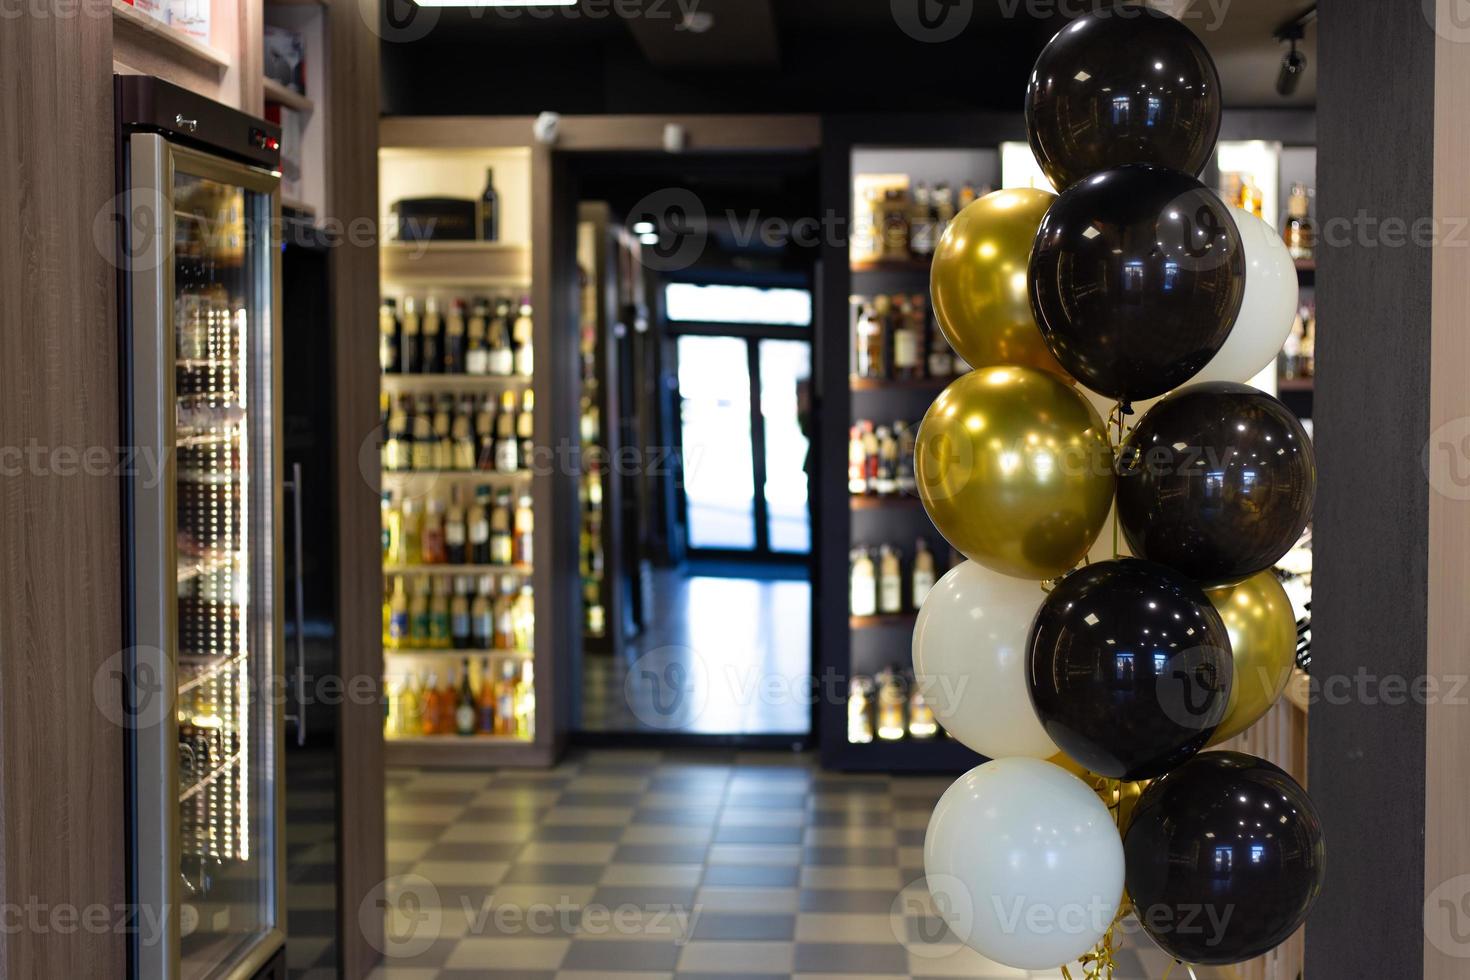 alkoholaffären är dekorerad med ballonger med anledning av öppningen. foto